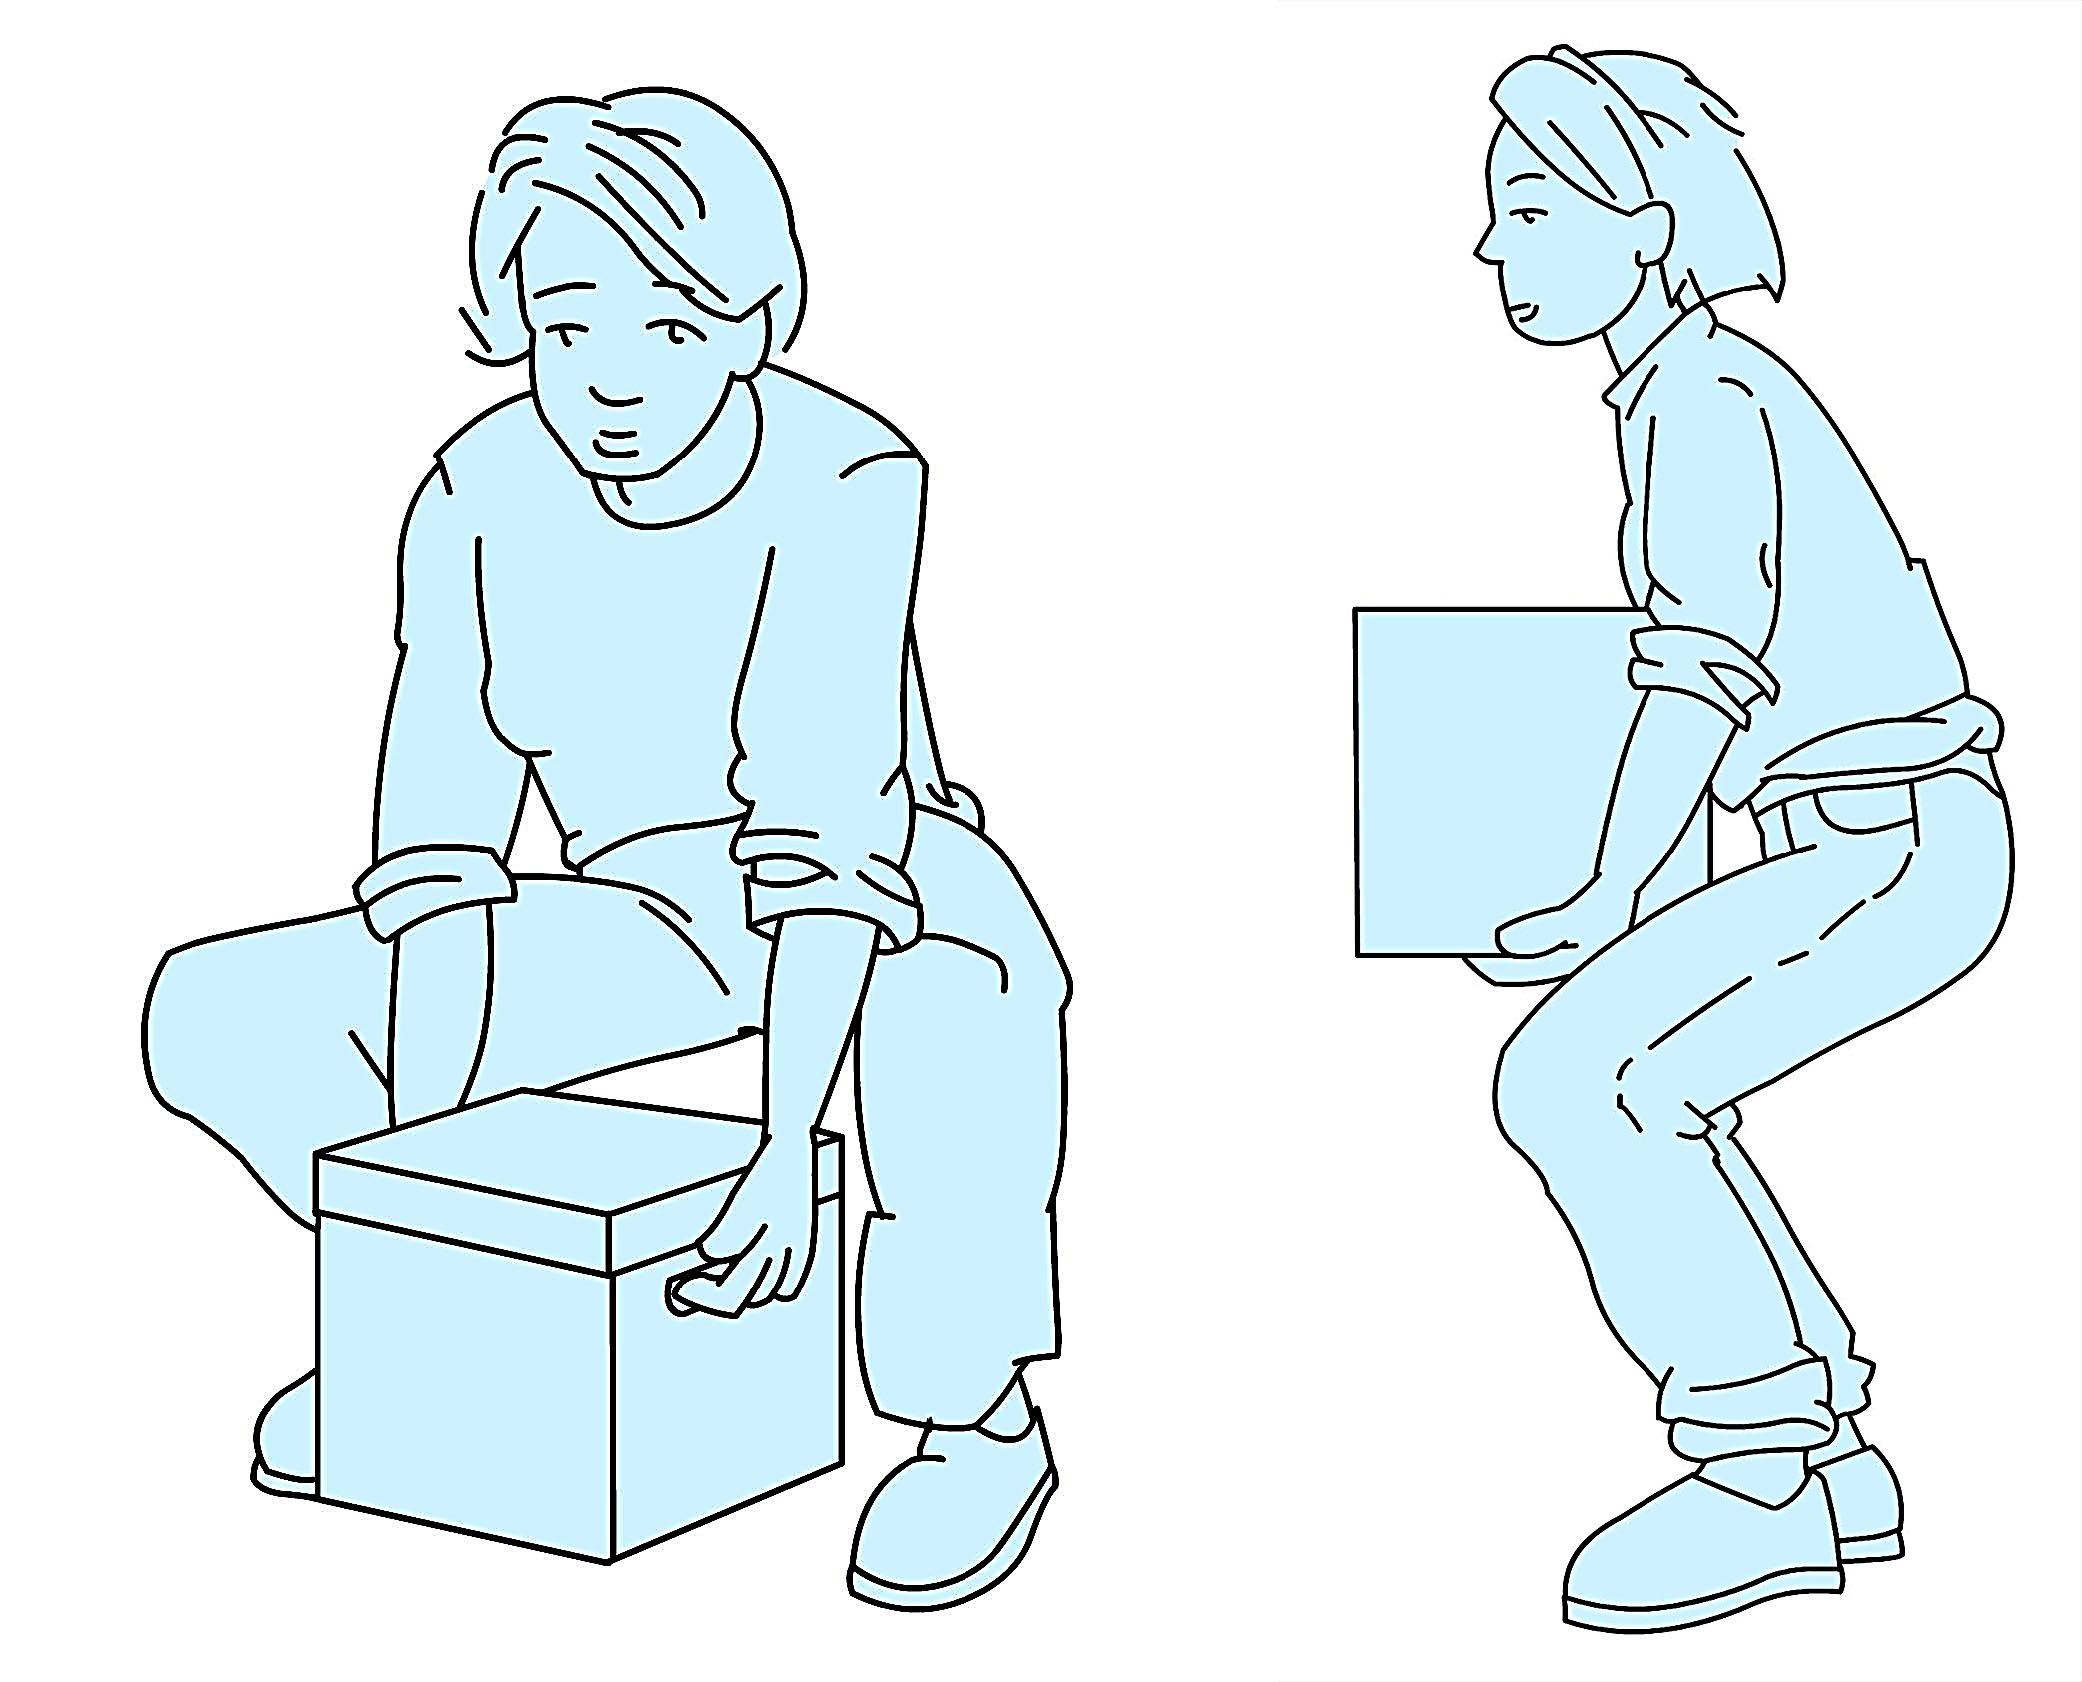 Levantamiento correcto de carga: espalda recta y , sin flexionar demasiado las rodillas, levantar por extensión de las piernas, manteniendo la carga pegada el cuerpo